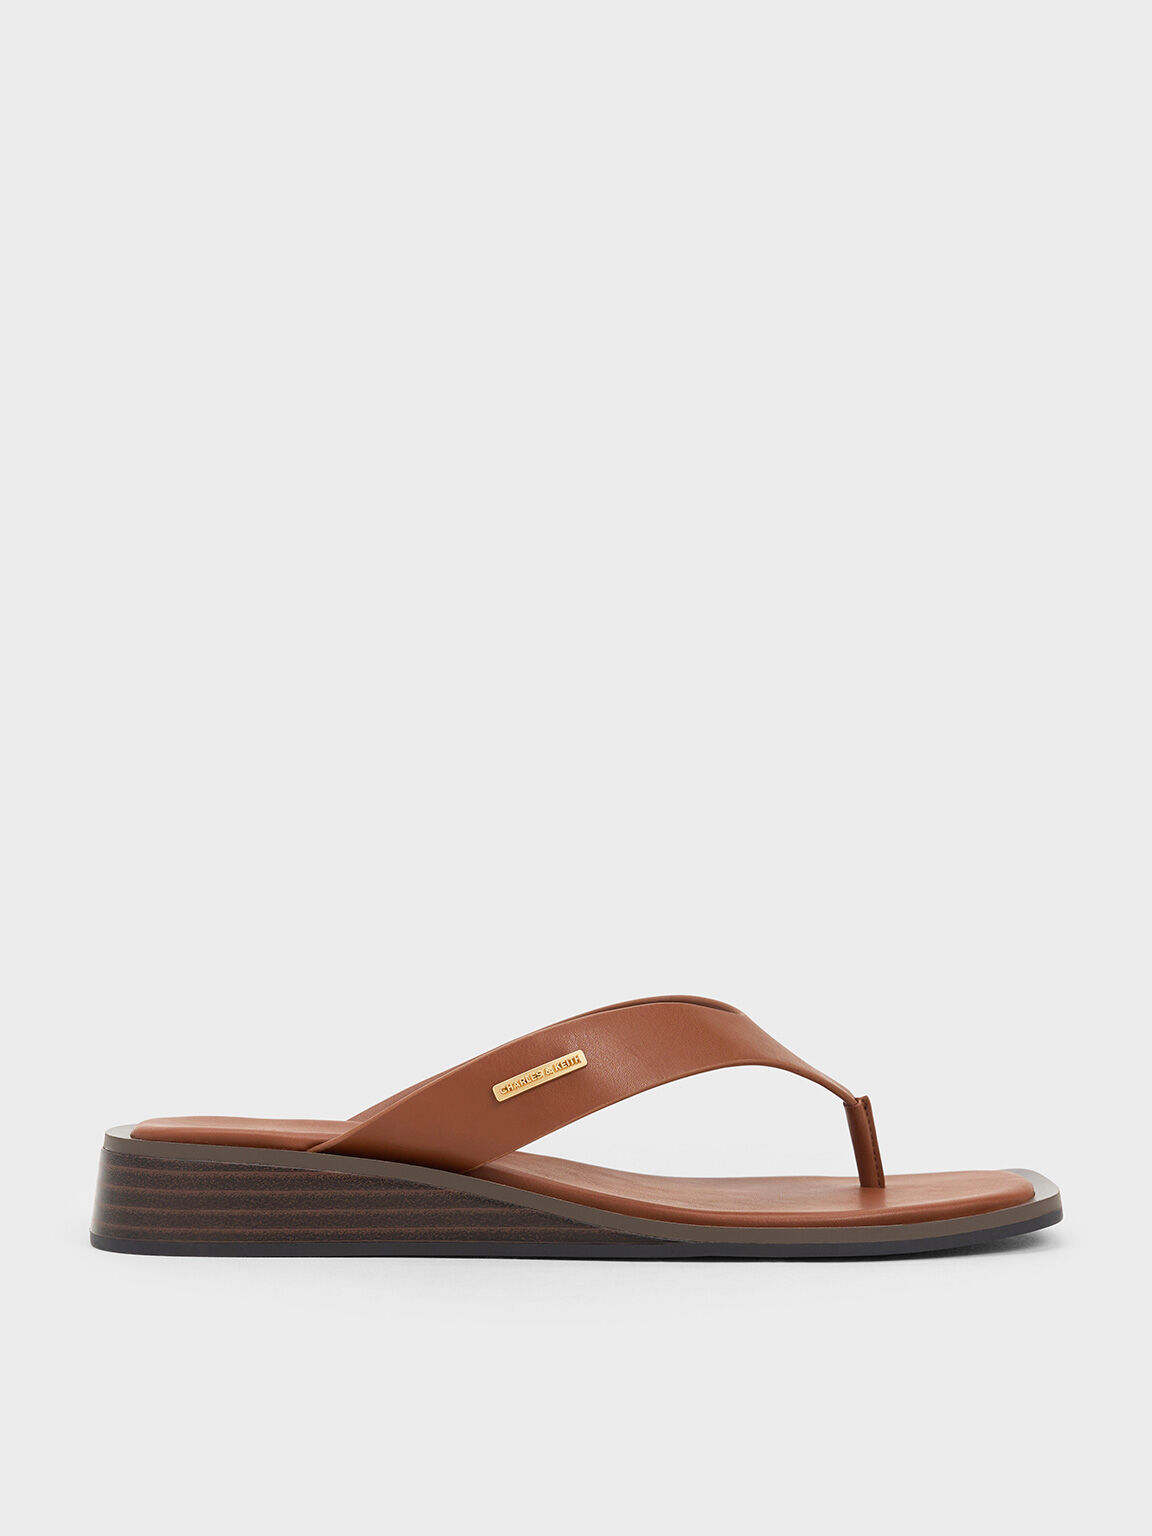 V-Strap Wedge Thong Sandals, Brown, hi-res